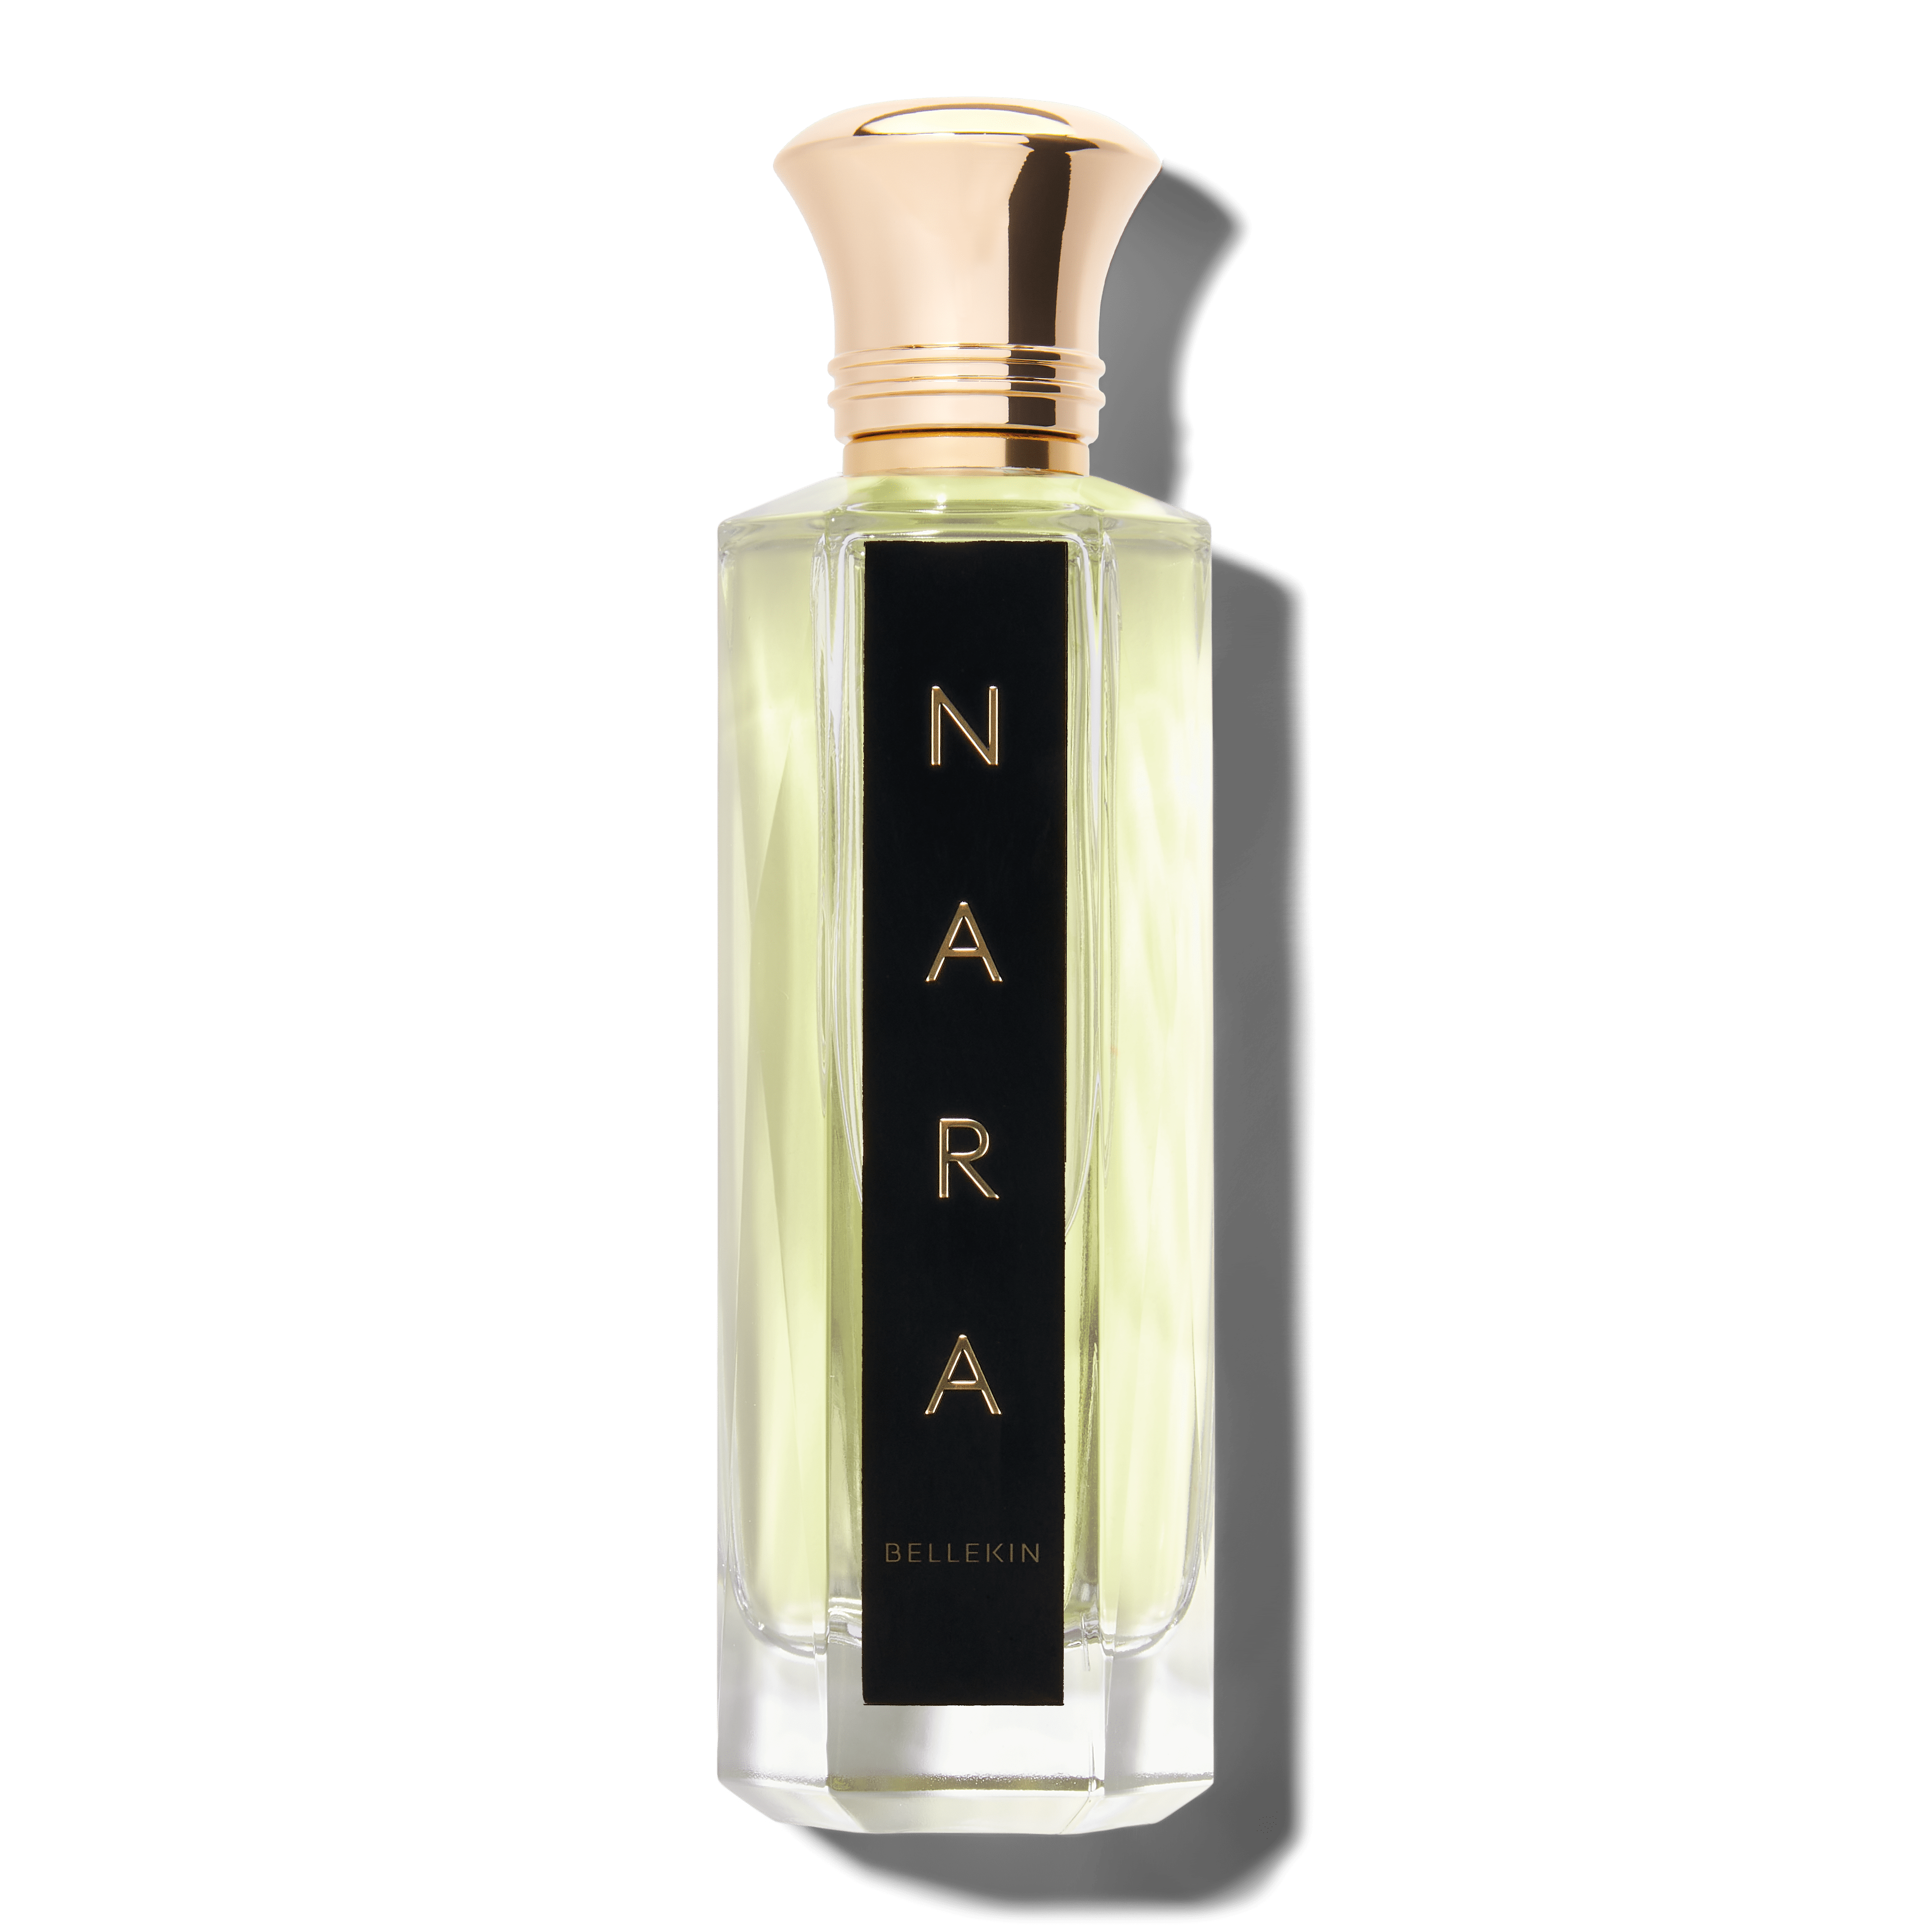 Bellekin.com Perfume NARA